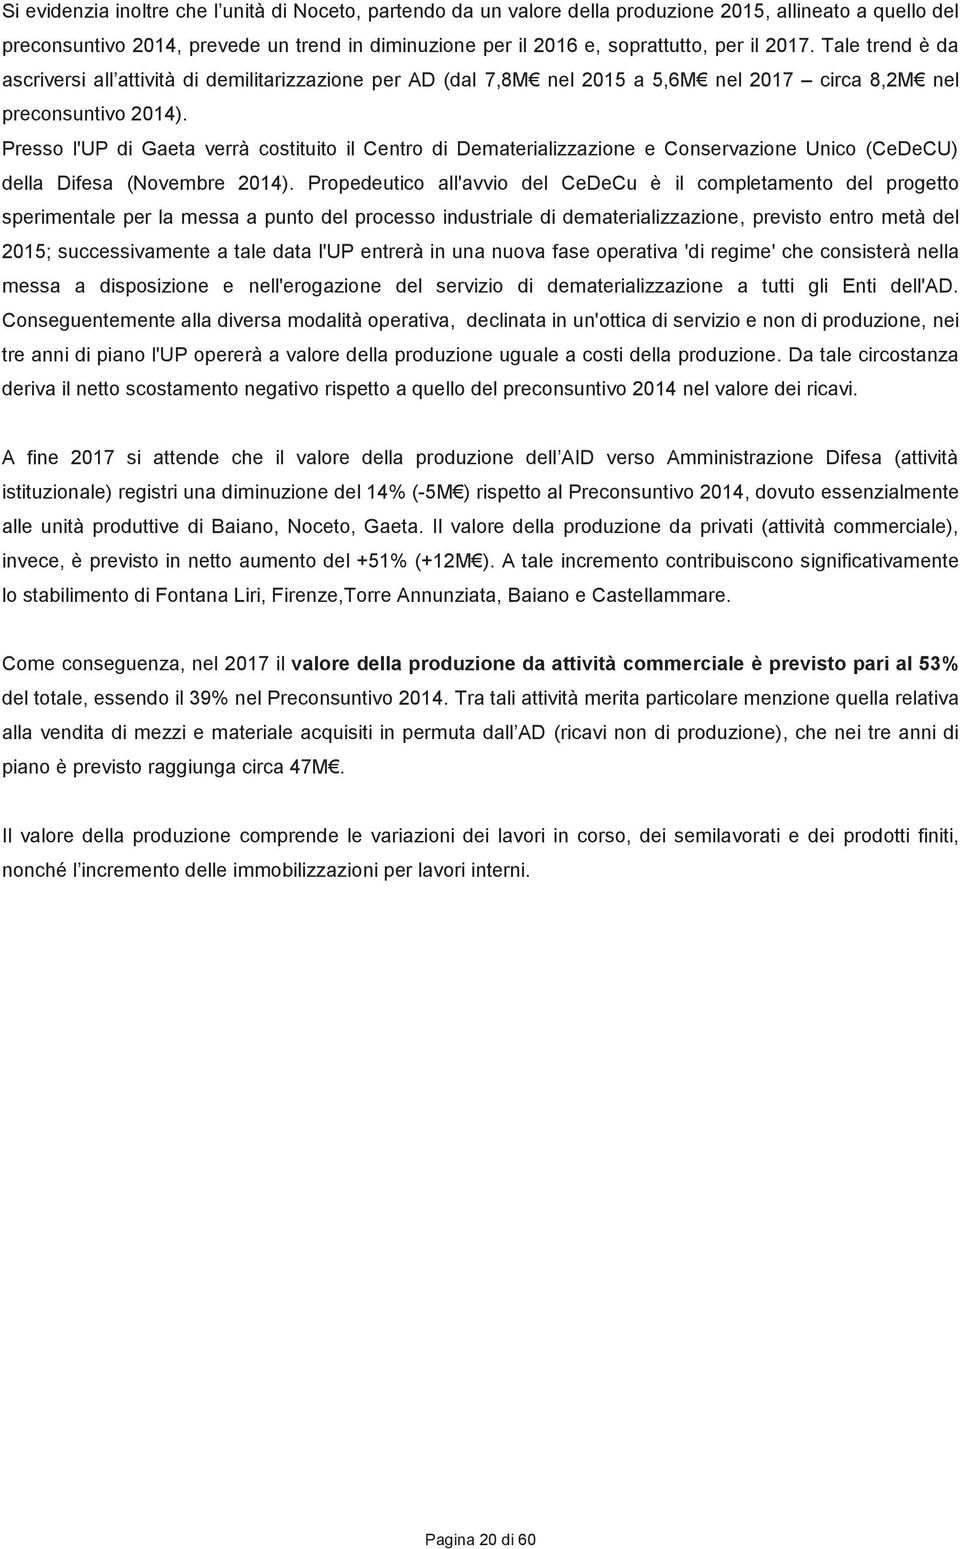 Presso l'up di Gaeta verrà costituito il Centro di Dematerializzazione e Conservazione Unico (CeDeCU) della Difesa (Novembre 2014).